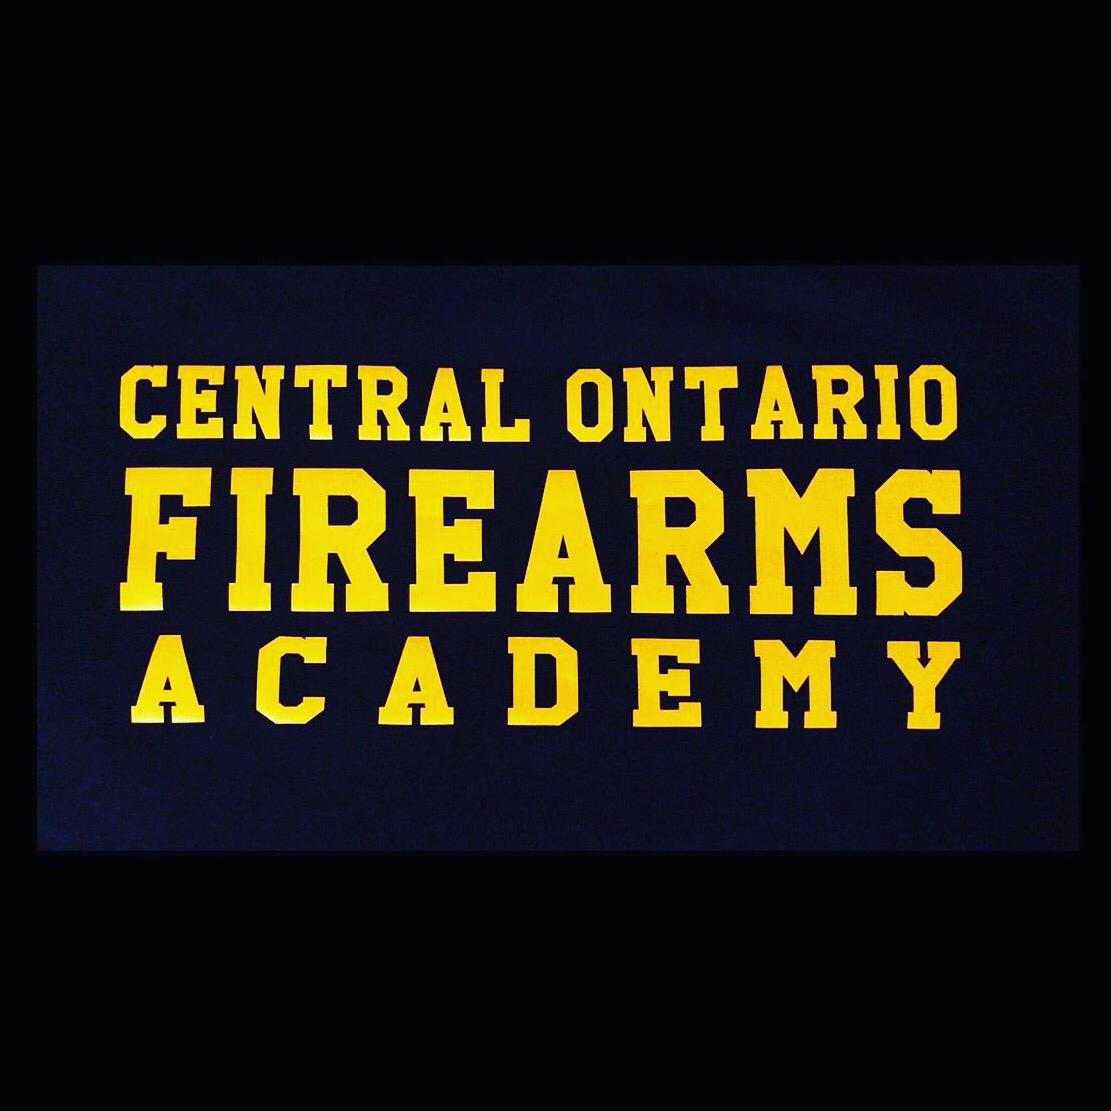  Firearms Academy Central Ontario 